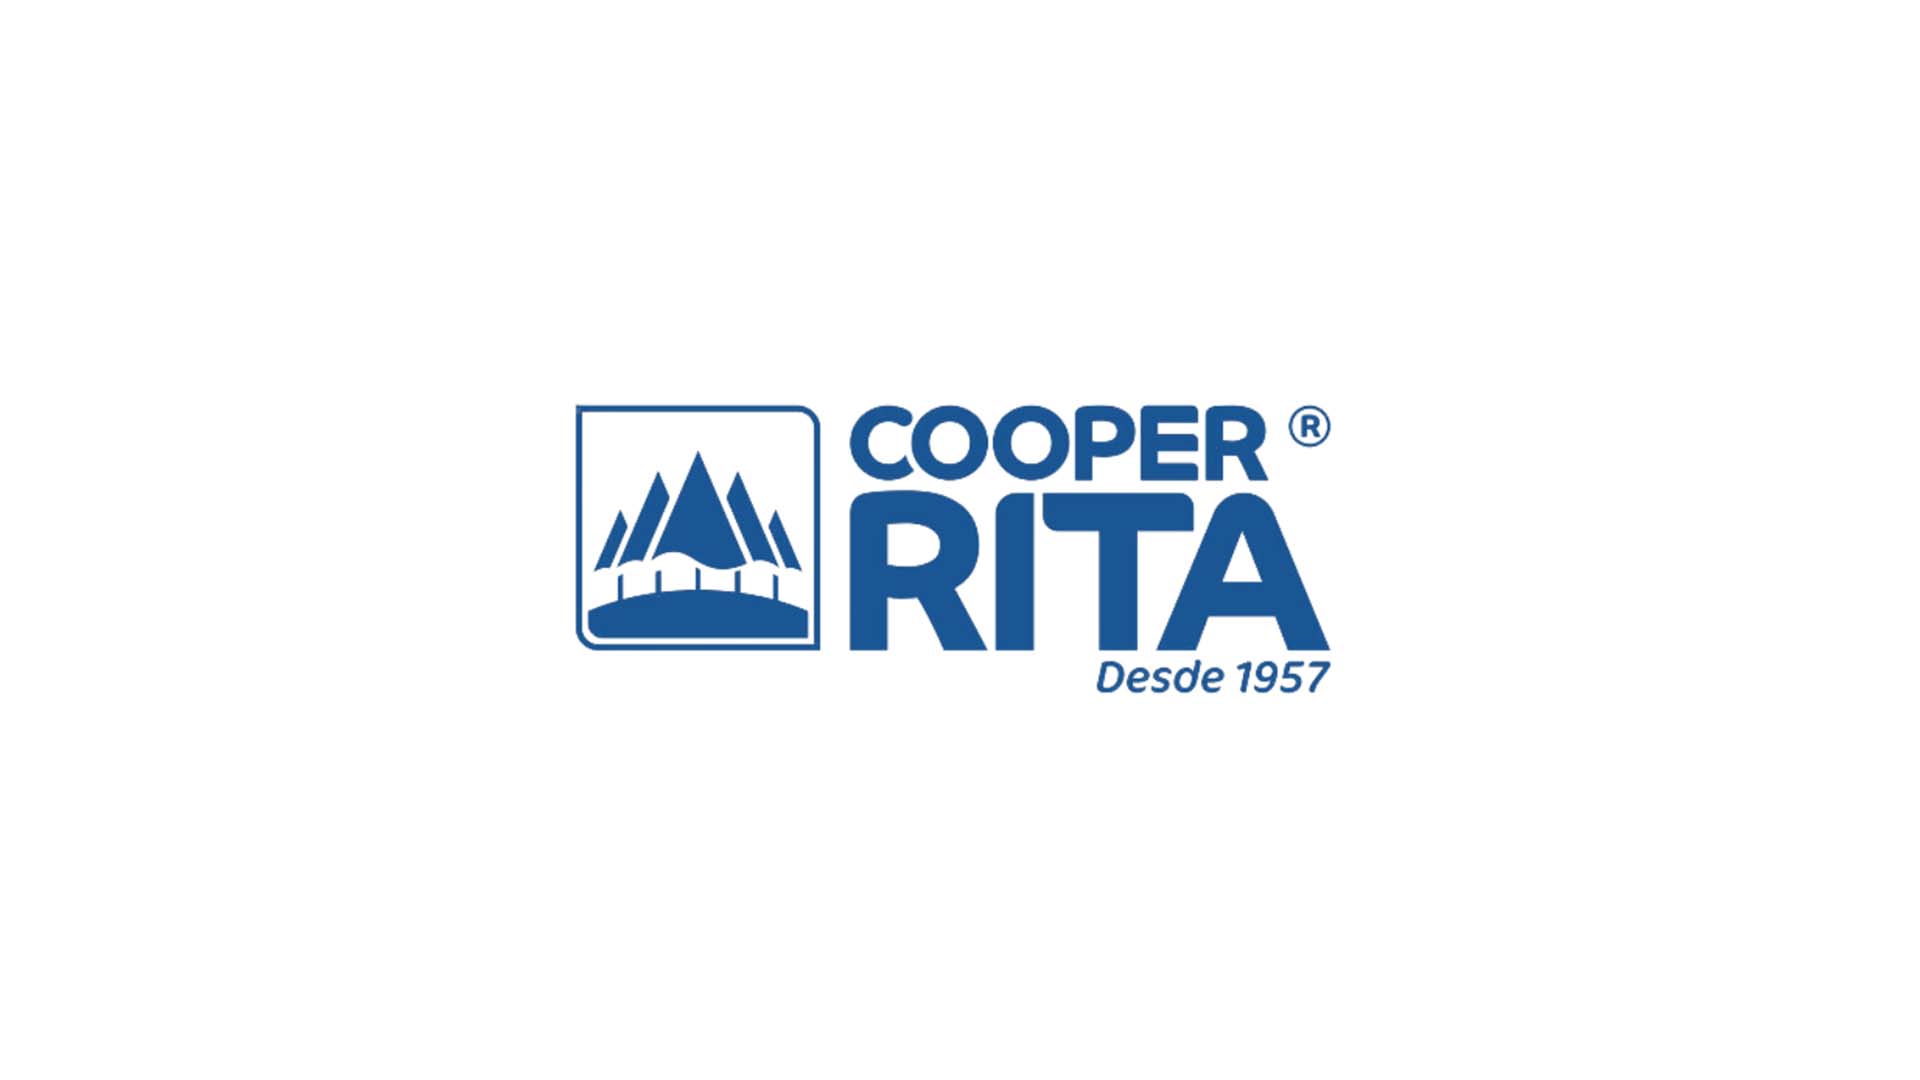 Cooper-Rita